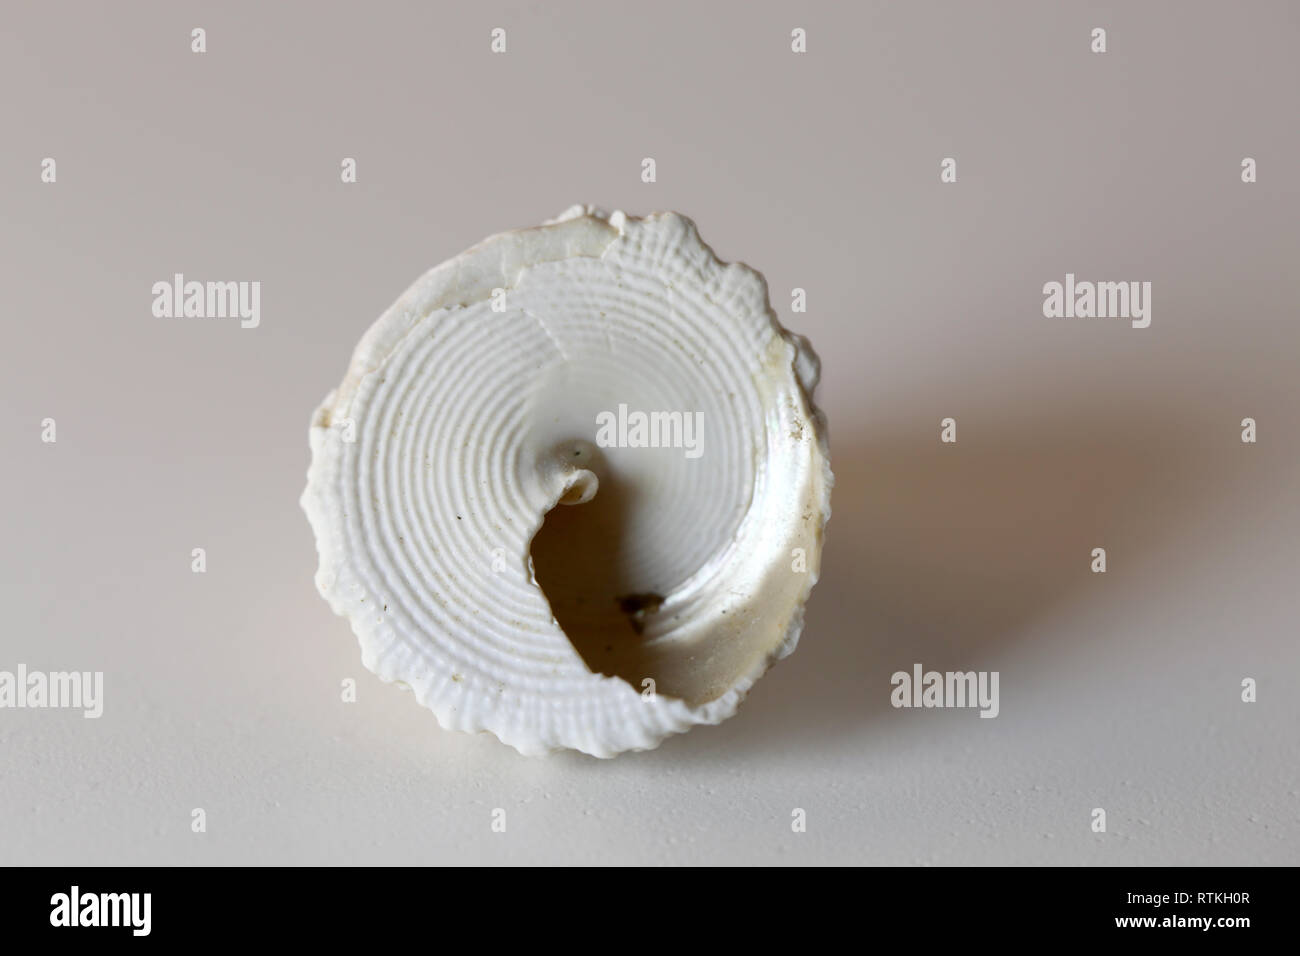 Still Life photo d'un beau blanc & marron mollusque mer shell sur un tableau blanc. Joli souvenir de vacances au bord de la mer. Macro image avec les couleurs. Banque D'Images